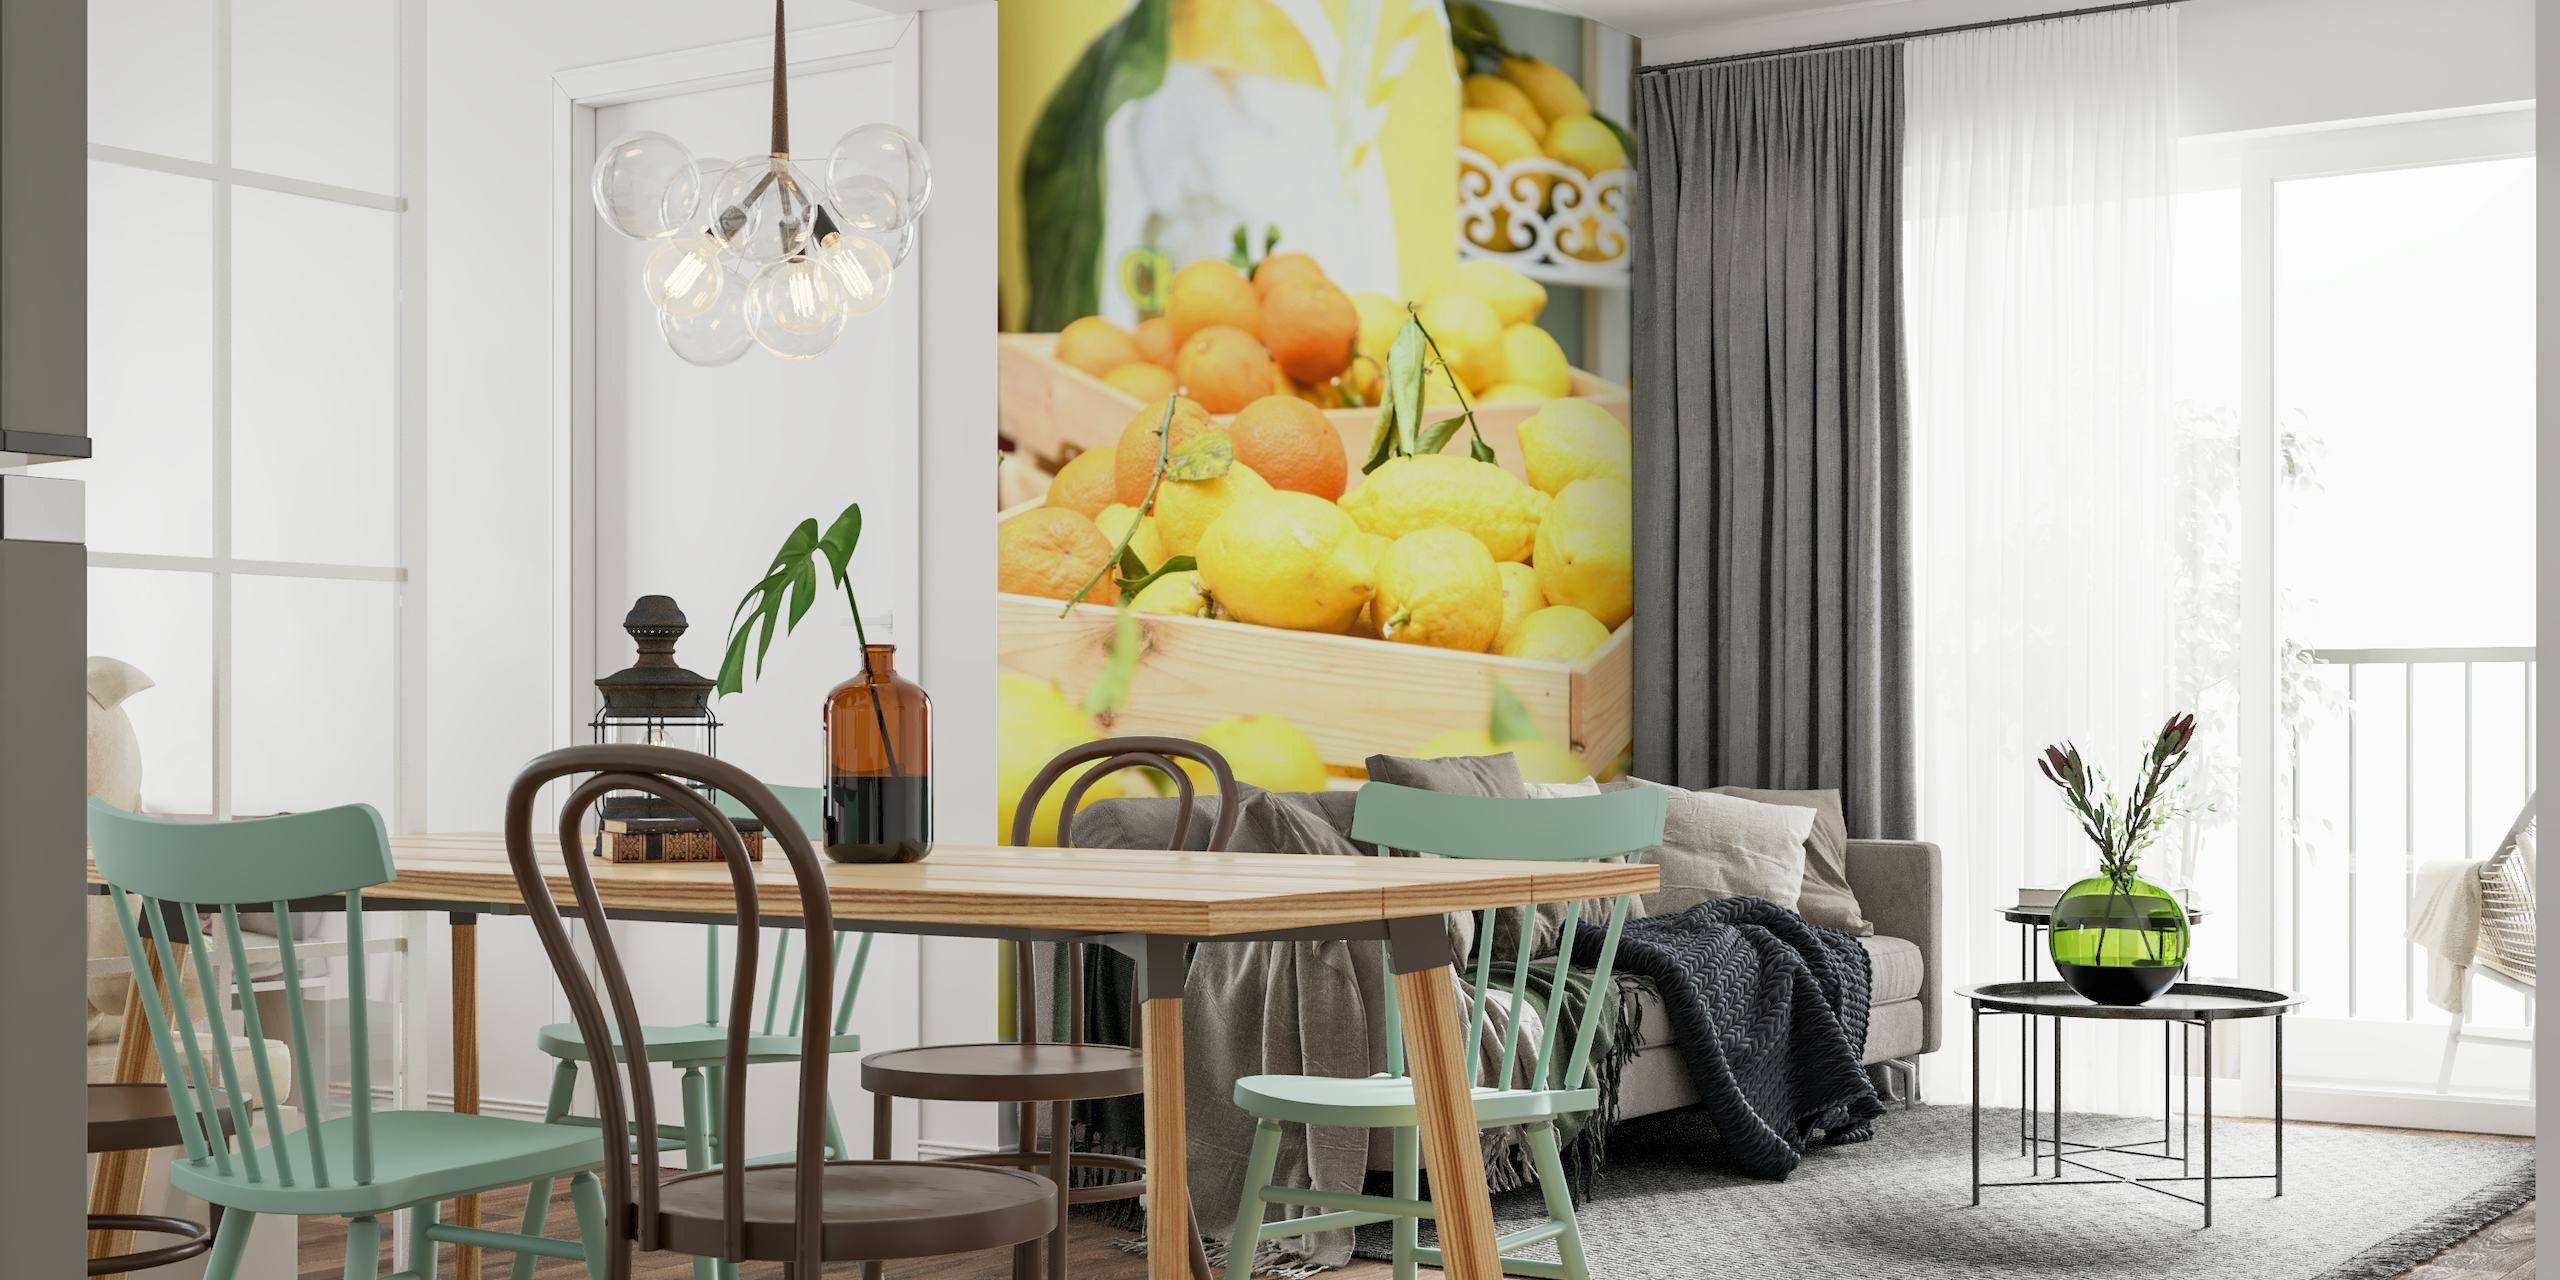 Amalfi Lemons Oranges 1 wallpaper